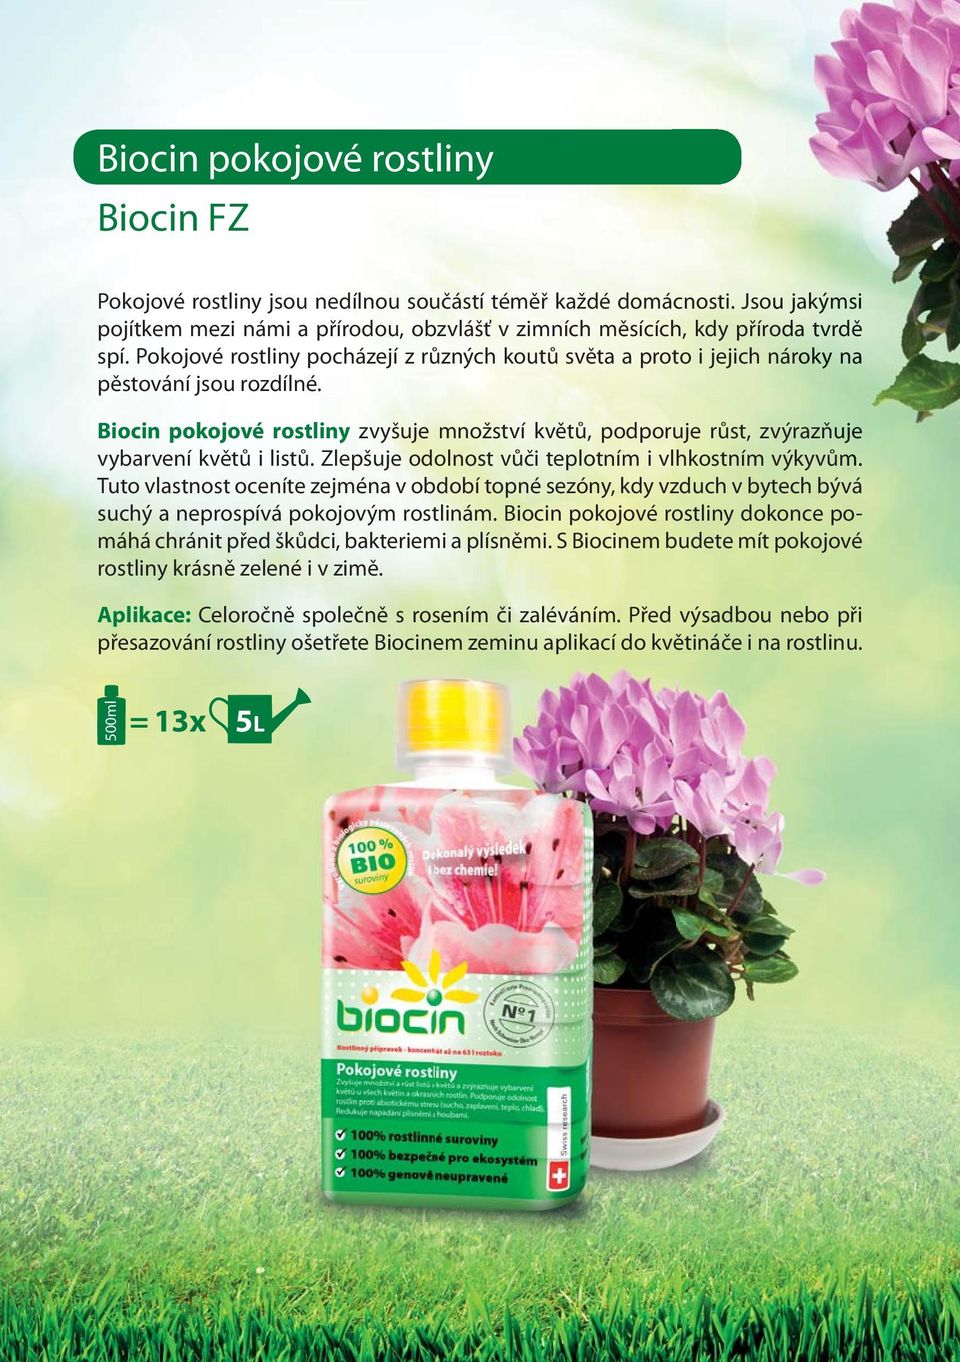 Biocin pokojové rostliny zvyšuje množství květů, podporuje růst, zvýrazňuje vybarvení květů i listů. Zlepšuje odolnost vůči teplotním i vlhkostním výkyvům.